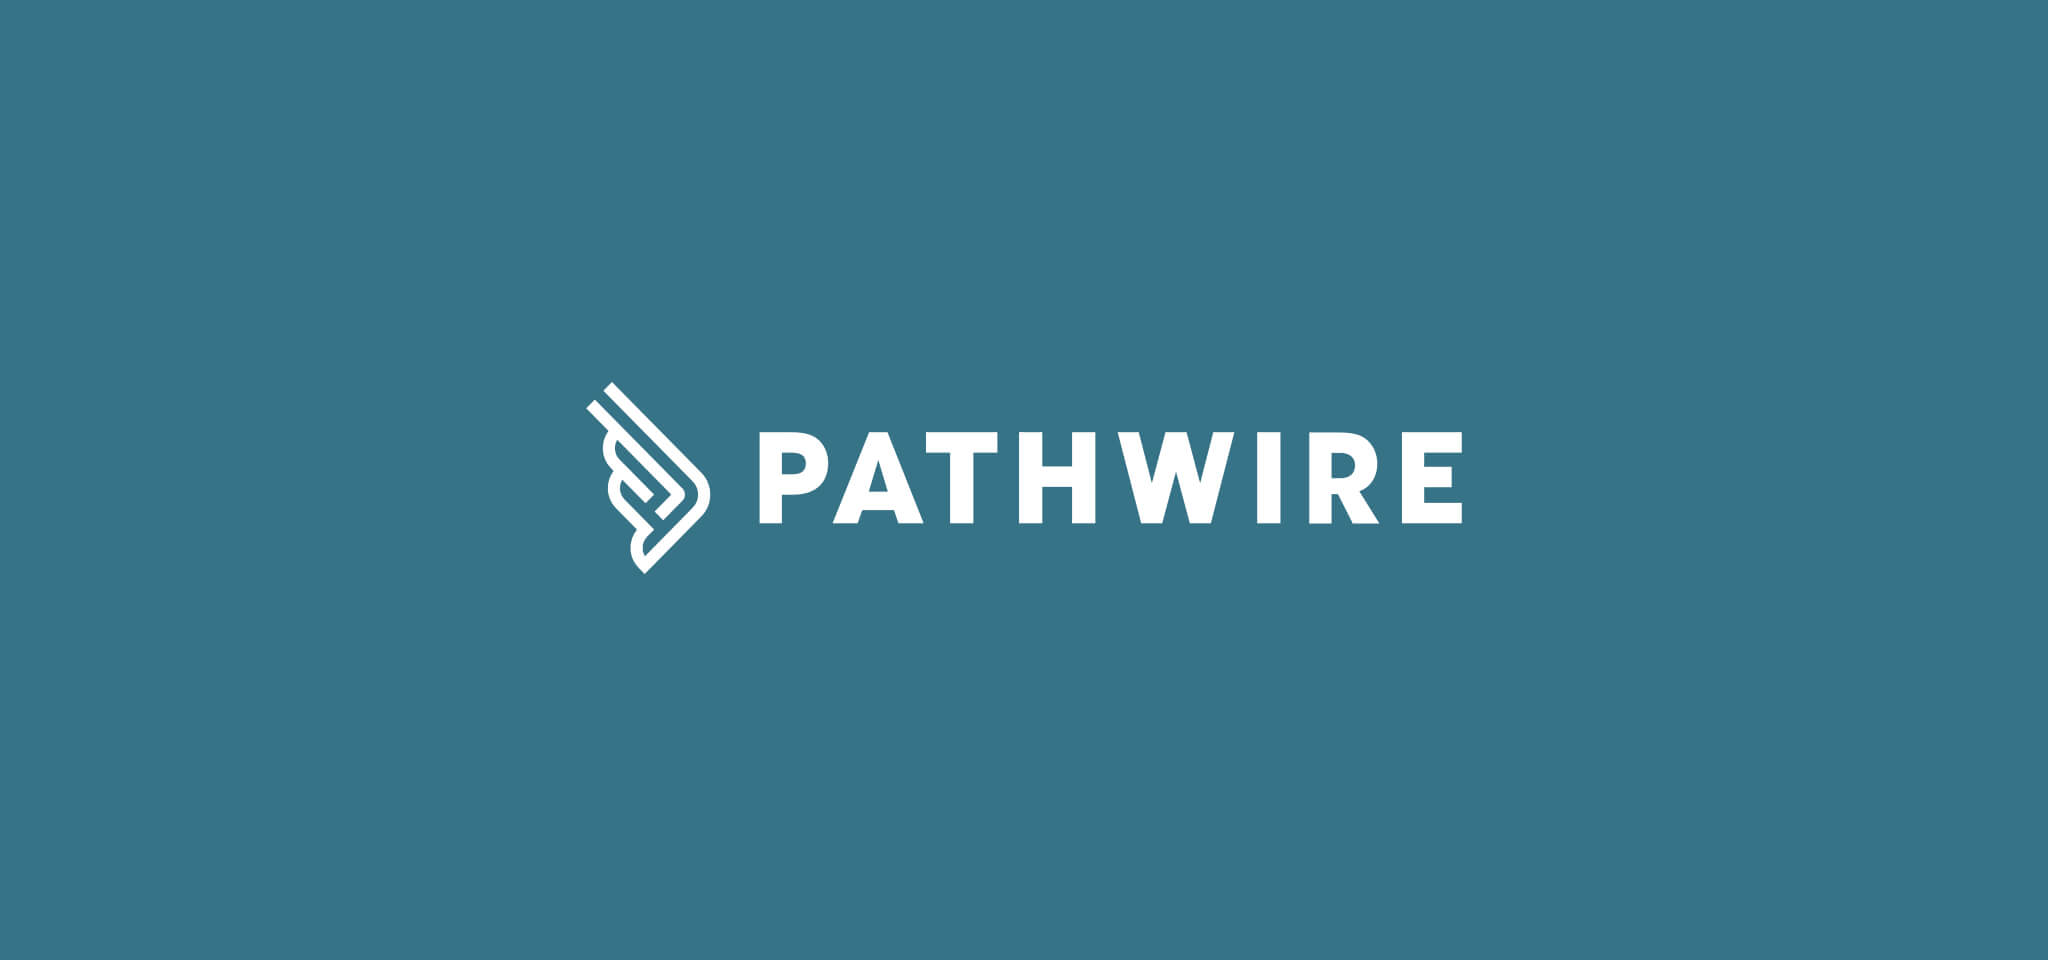 Pathwire Logo und Titel